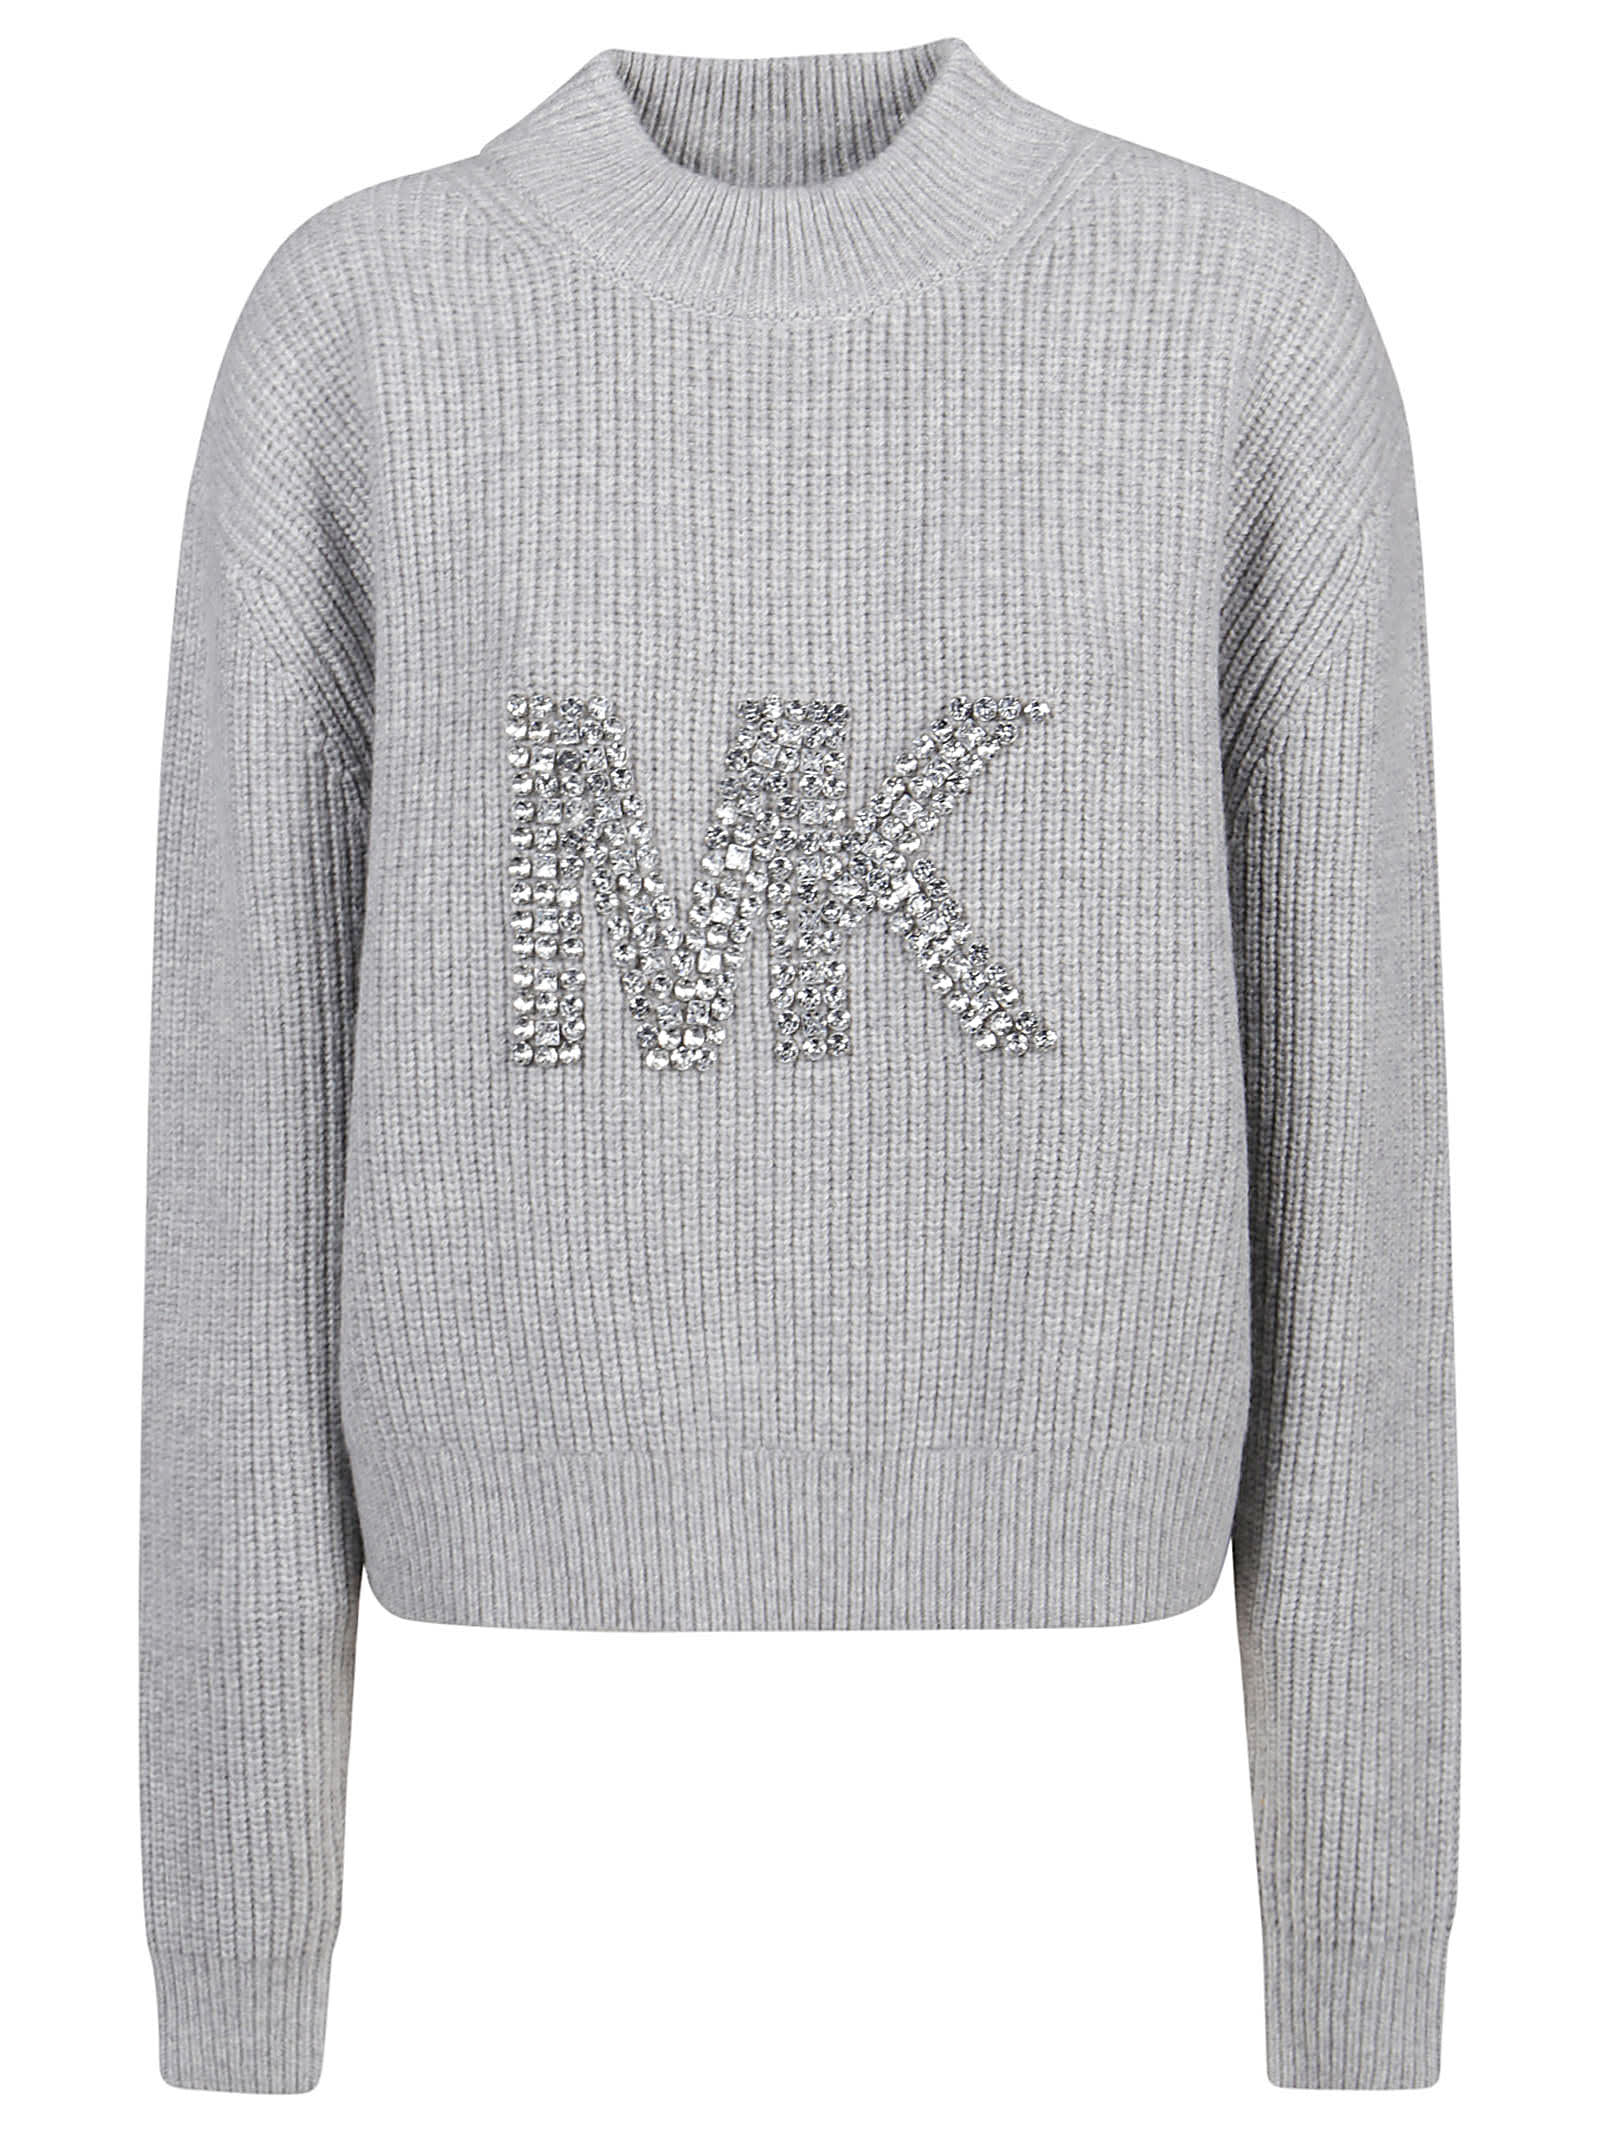 Michael Kors Rhinestone Sweater